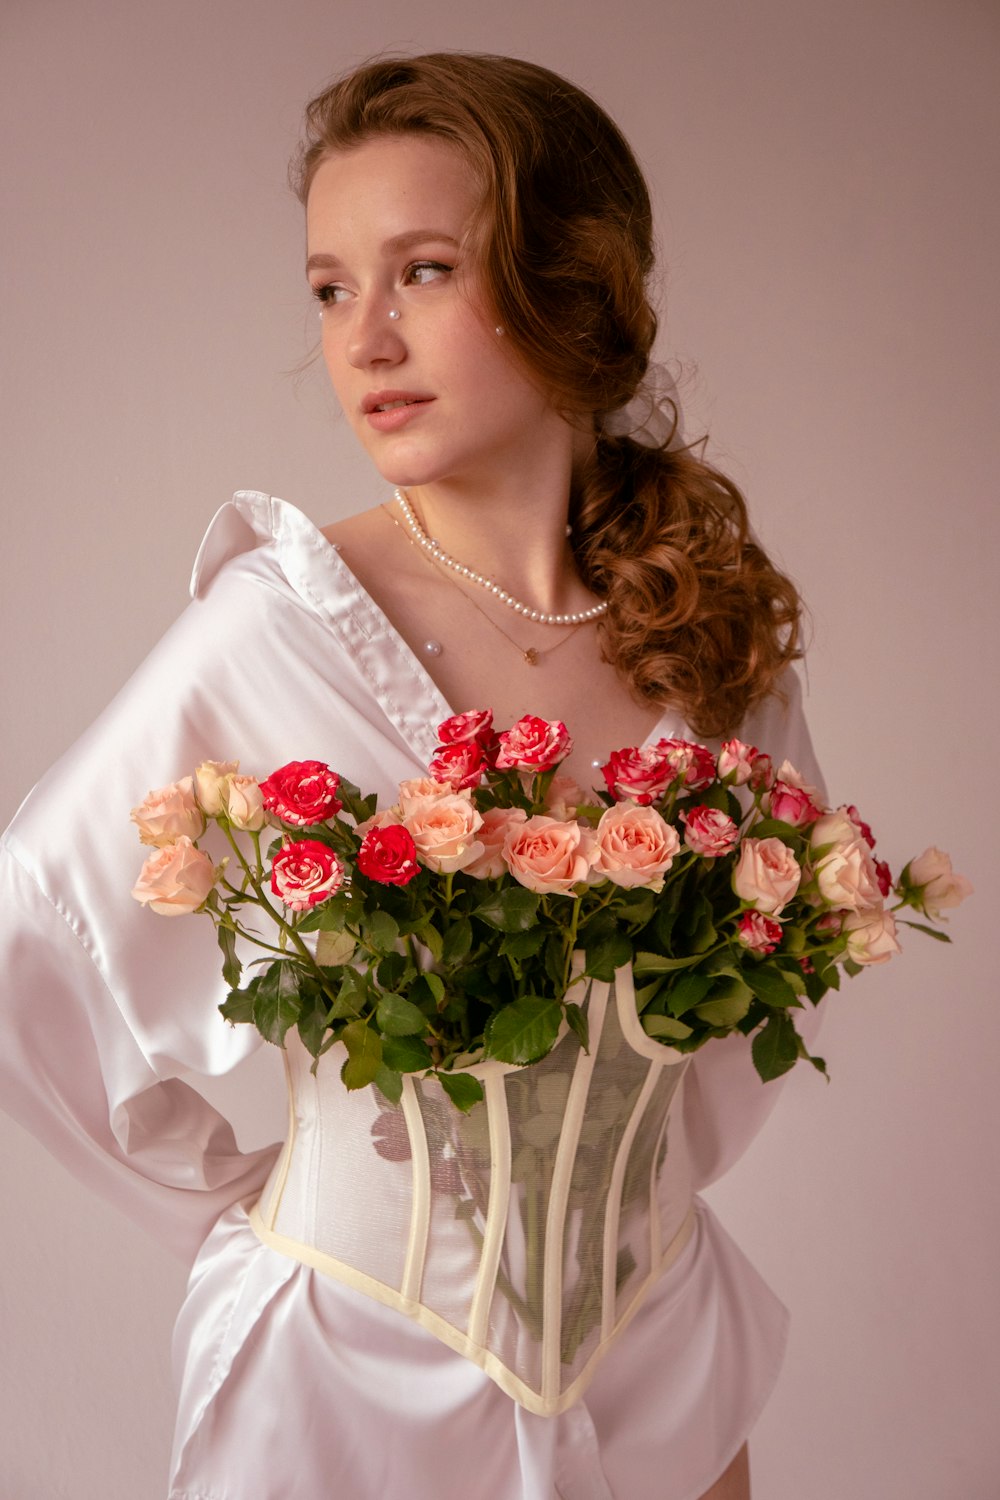 Une femme en robe blanche tenant un bouquet de roses